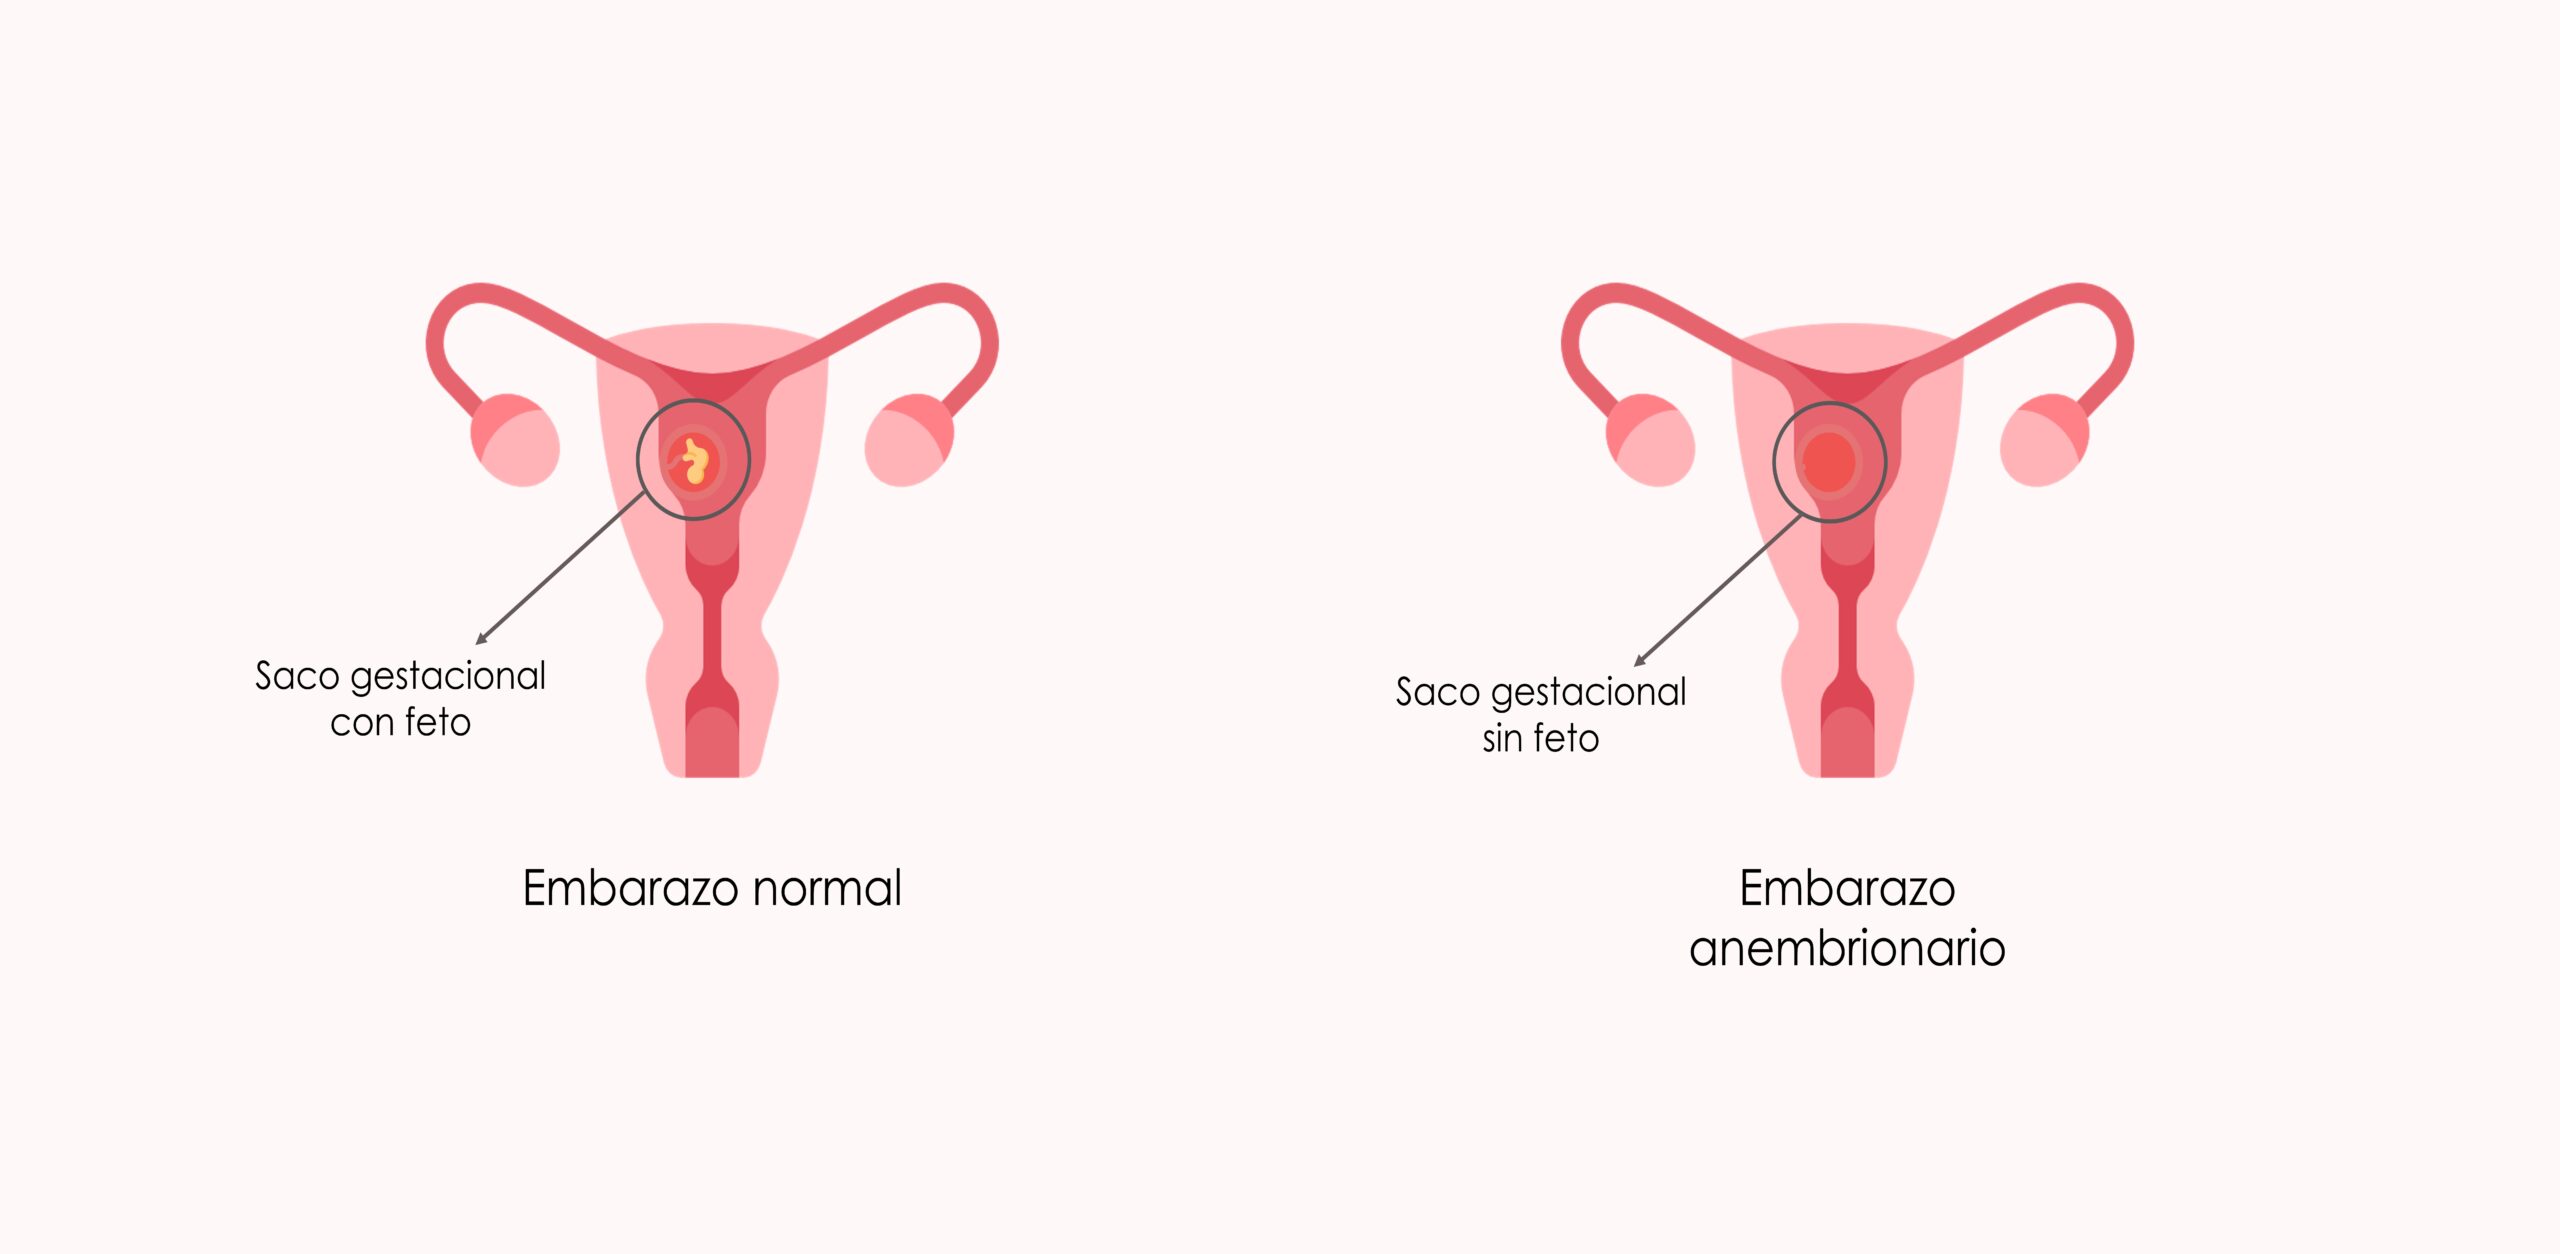 Diferencia entre embarazo normal y embarazo anembrionario